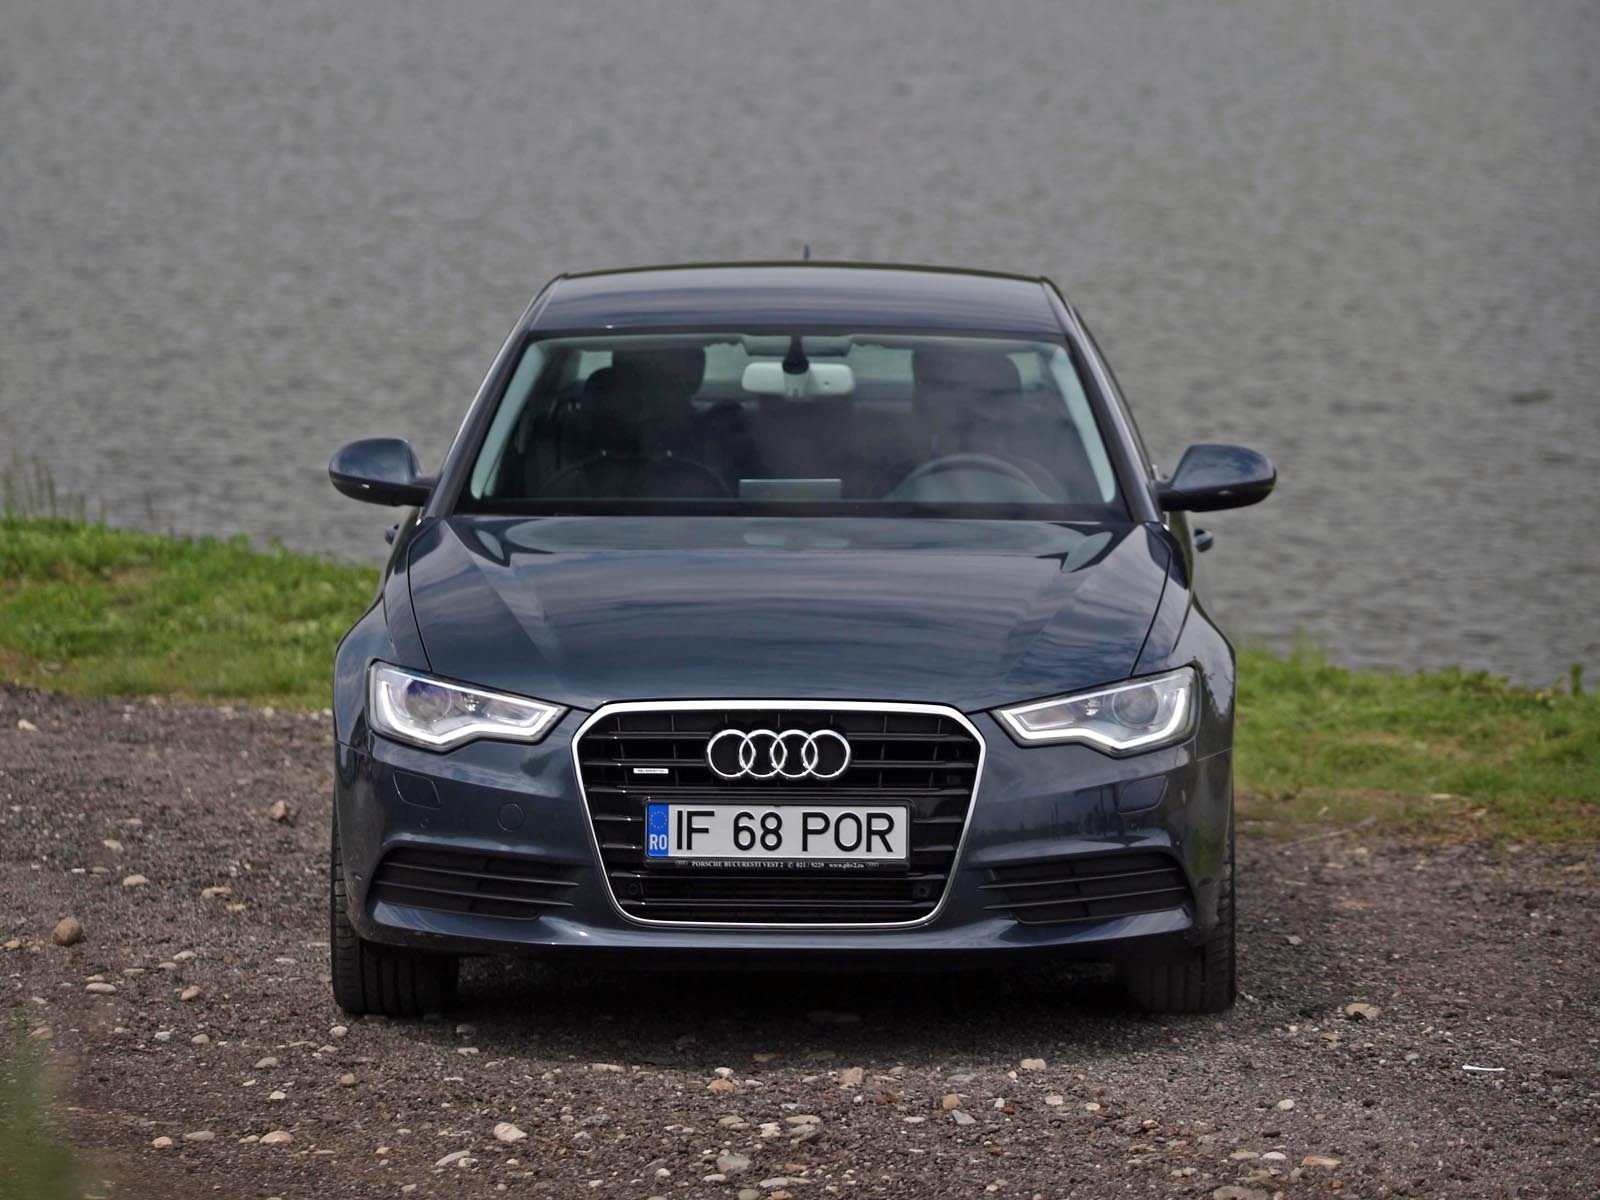 Pretul de baza al lui Audi A6 3.0 TDI quattro este unul normal pentru aceasta clasa: 55.699 euro